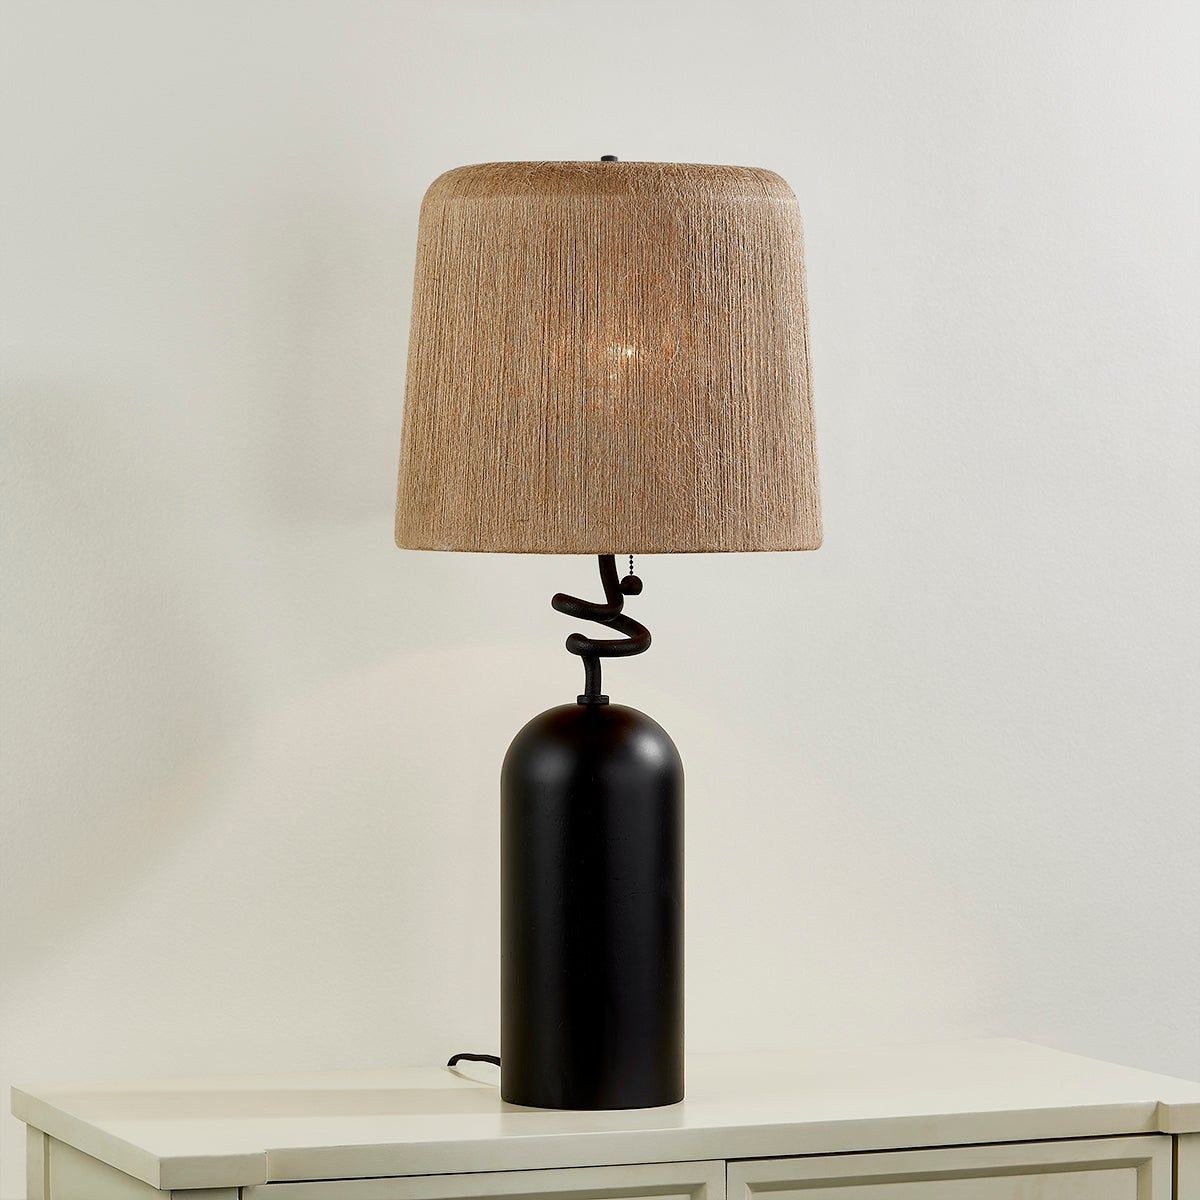 Morri 1-Light Table Lamp